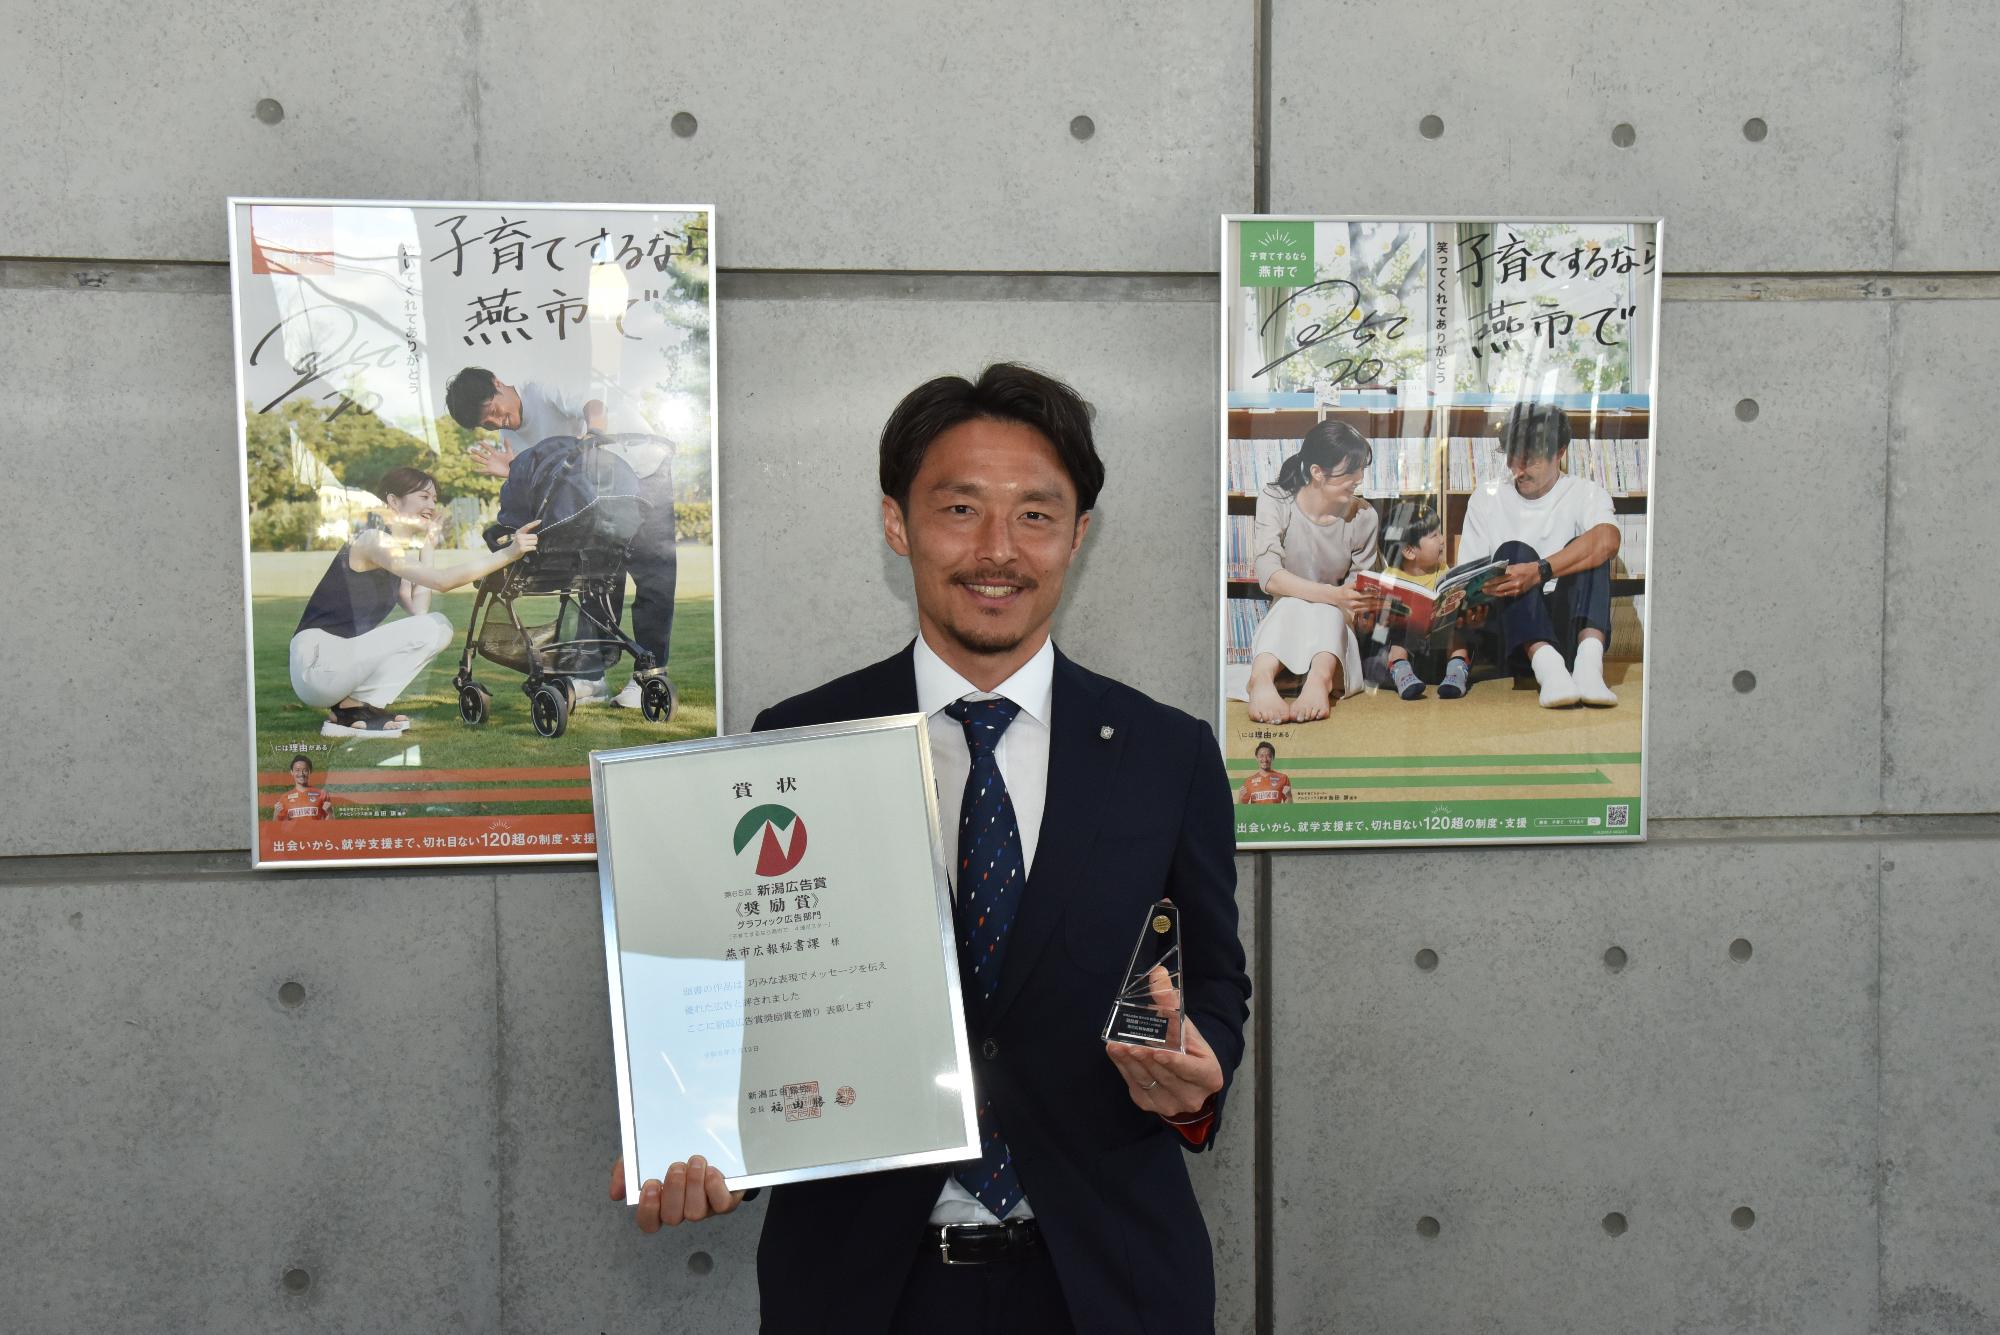 新潟広告賞で奨励賞を受賞したポスターの前で写る島田選手